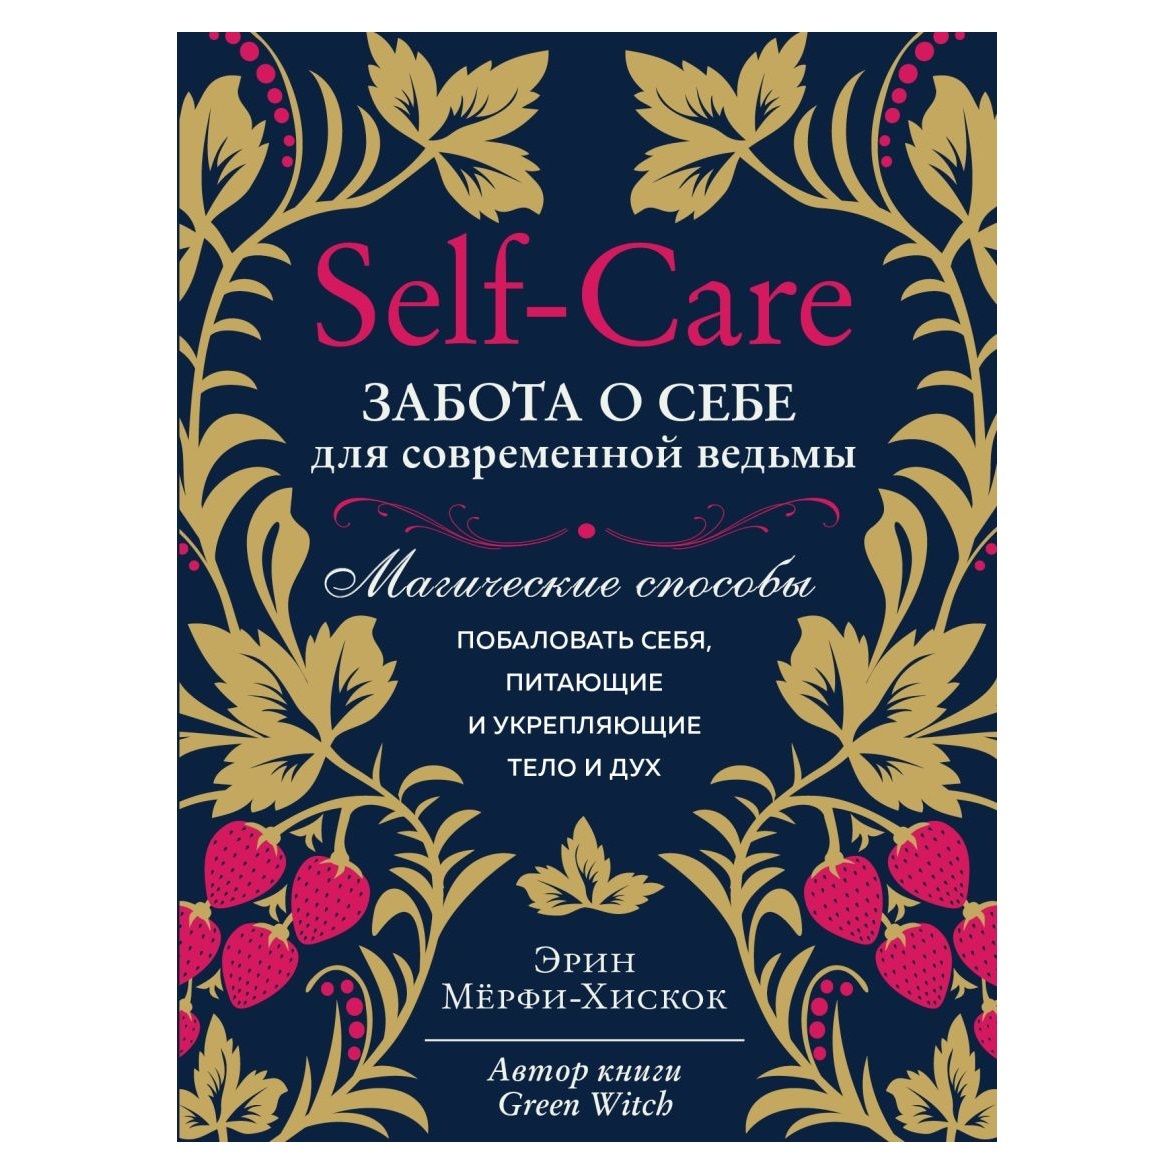 

Эрин Мёрфи-Хискок "Self-care. Забота о себе для современной ведьмы"